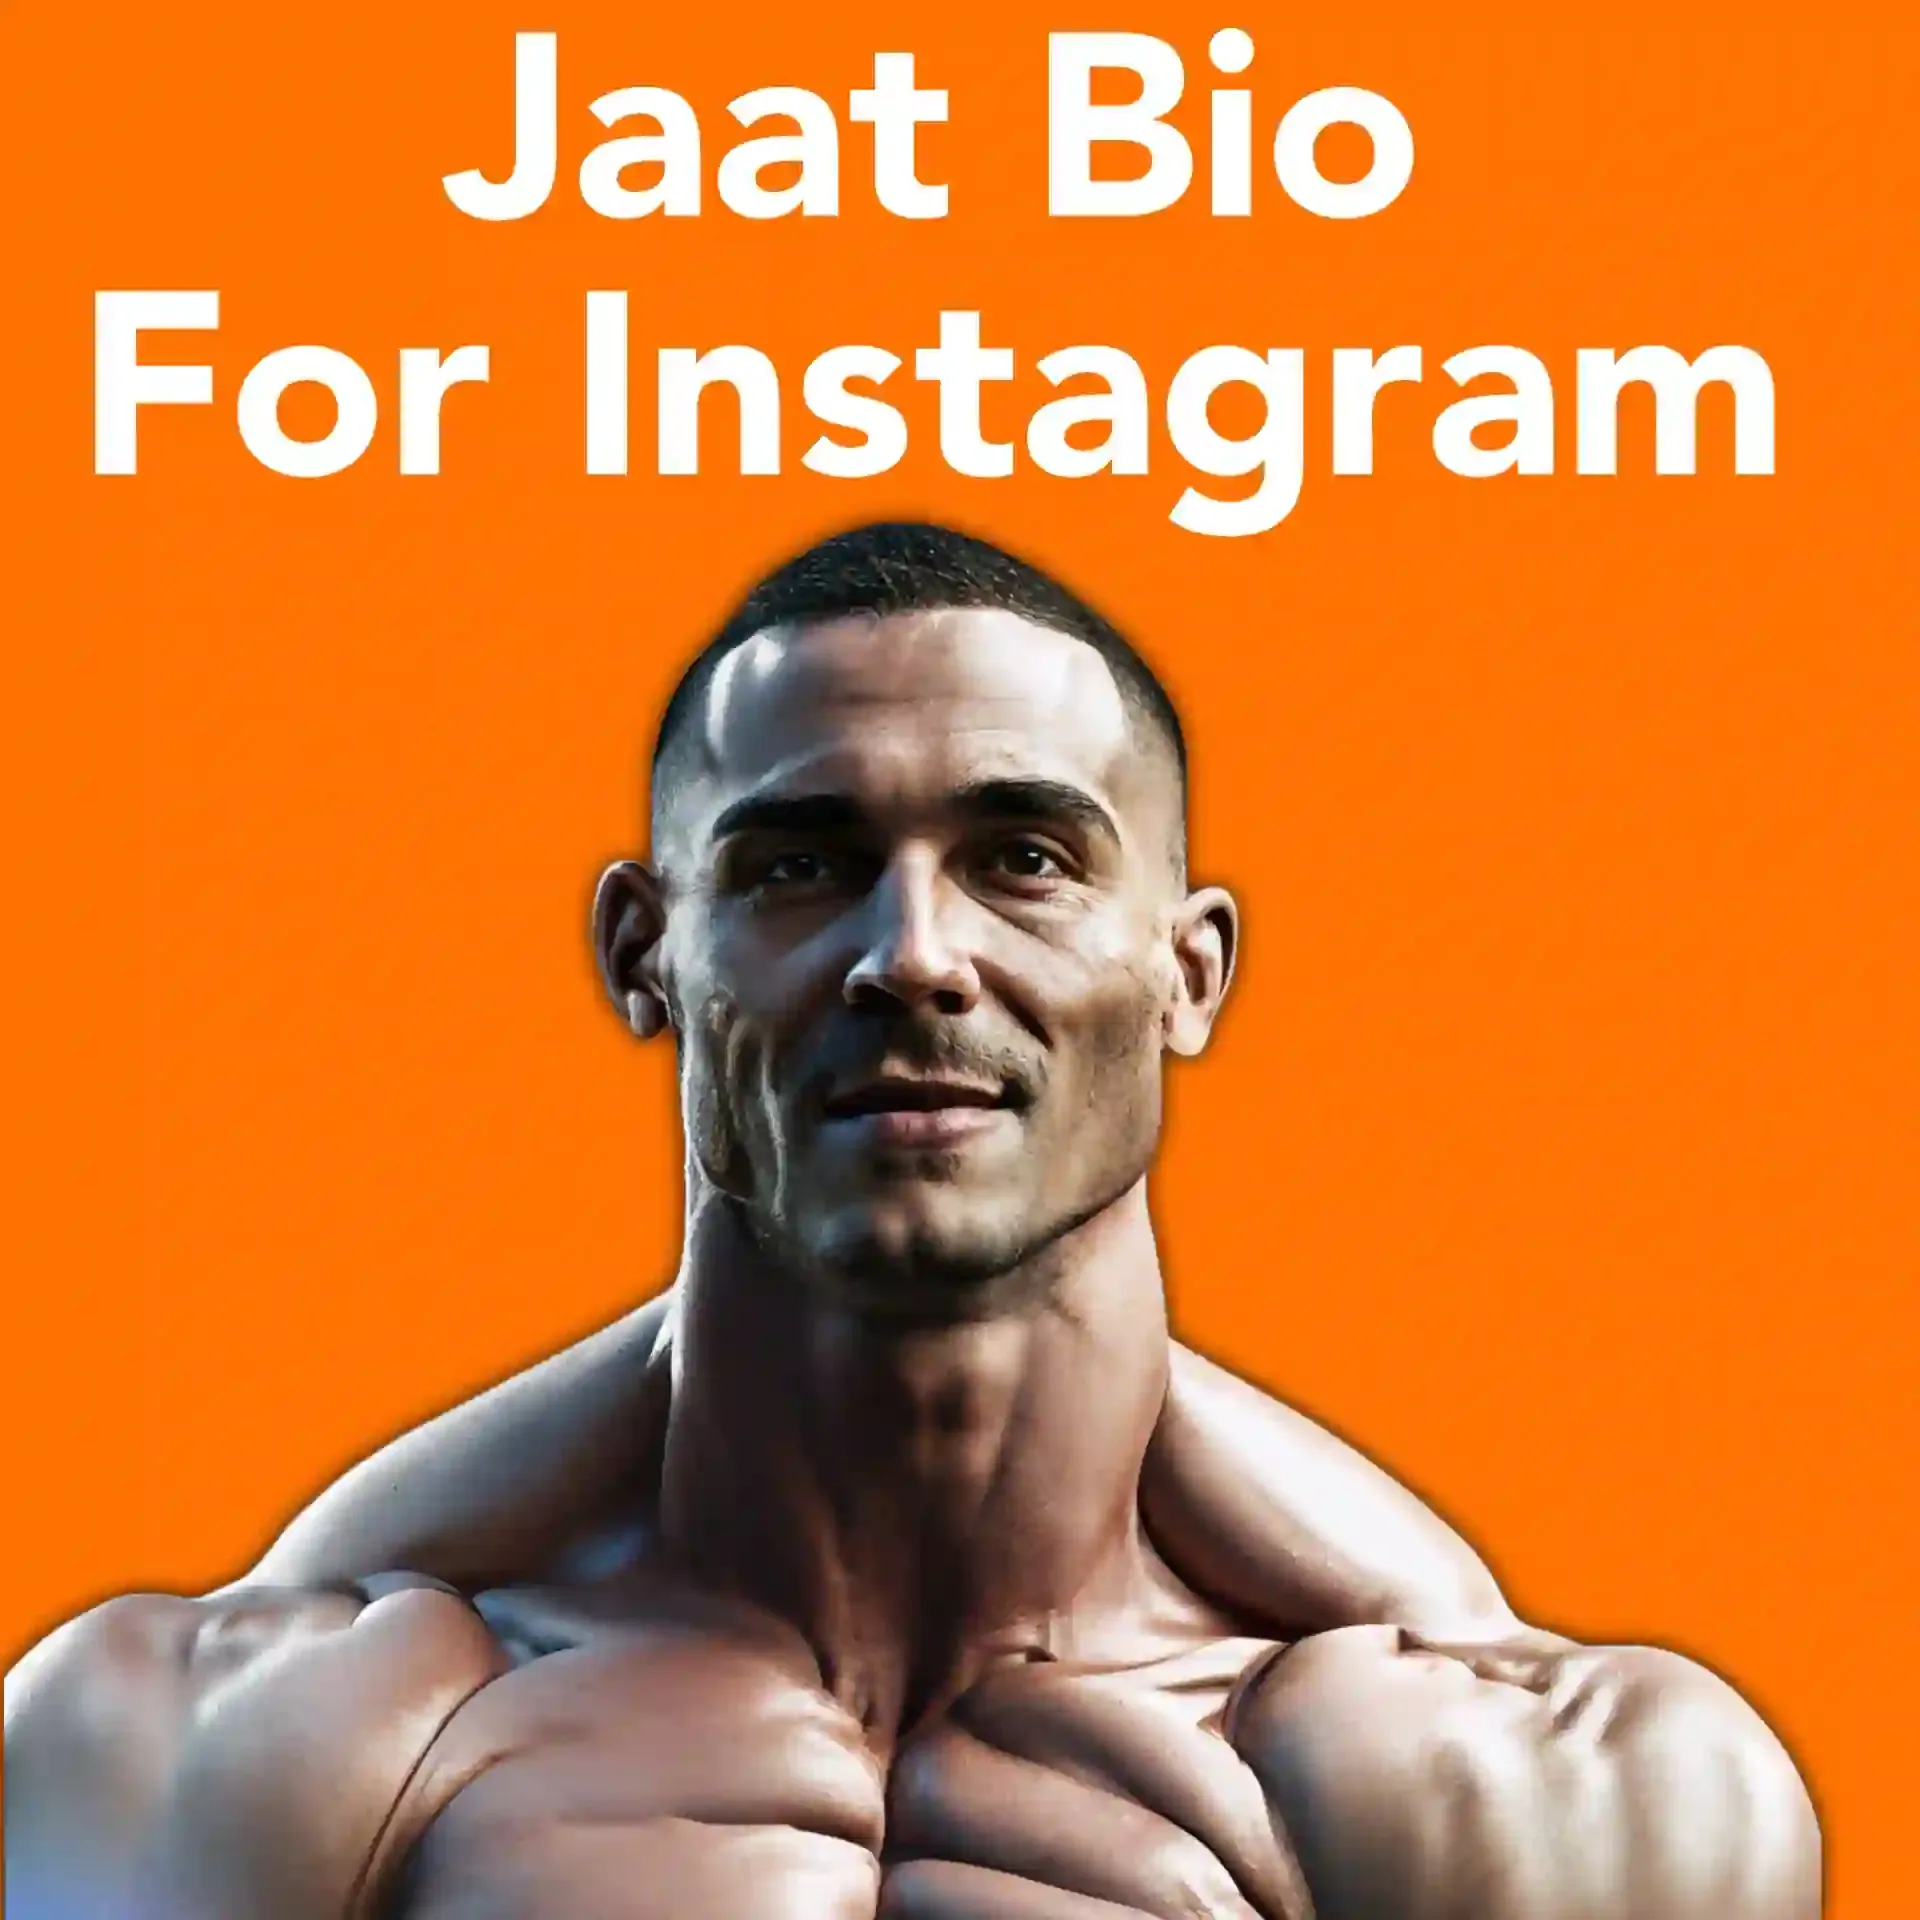 jaat bio for Instagram image